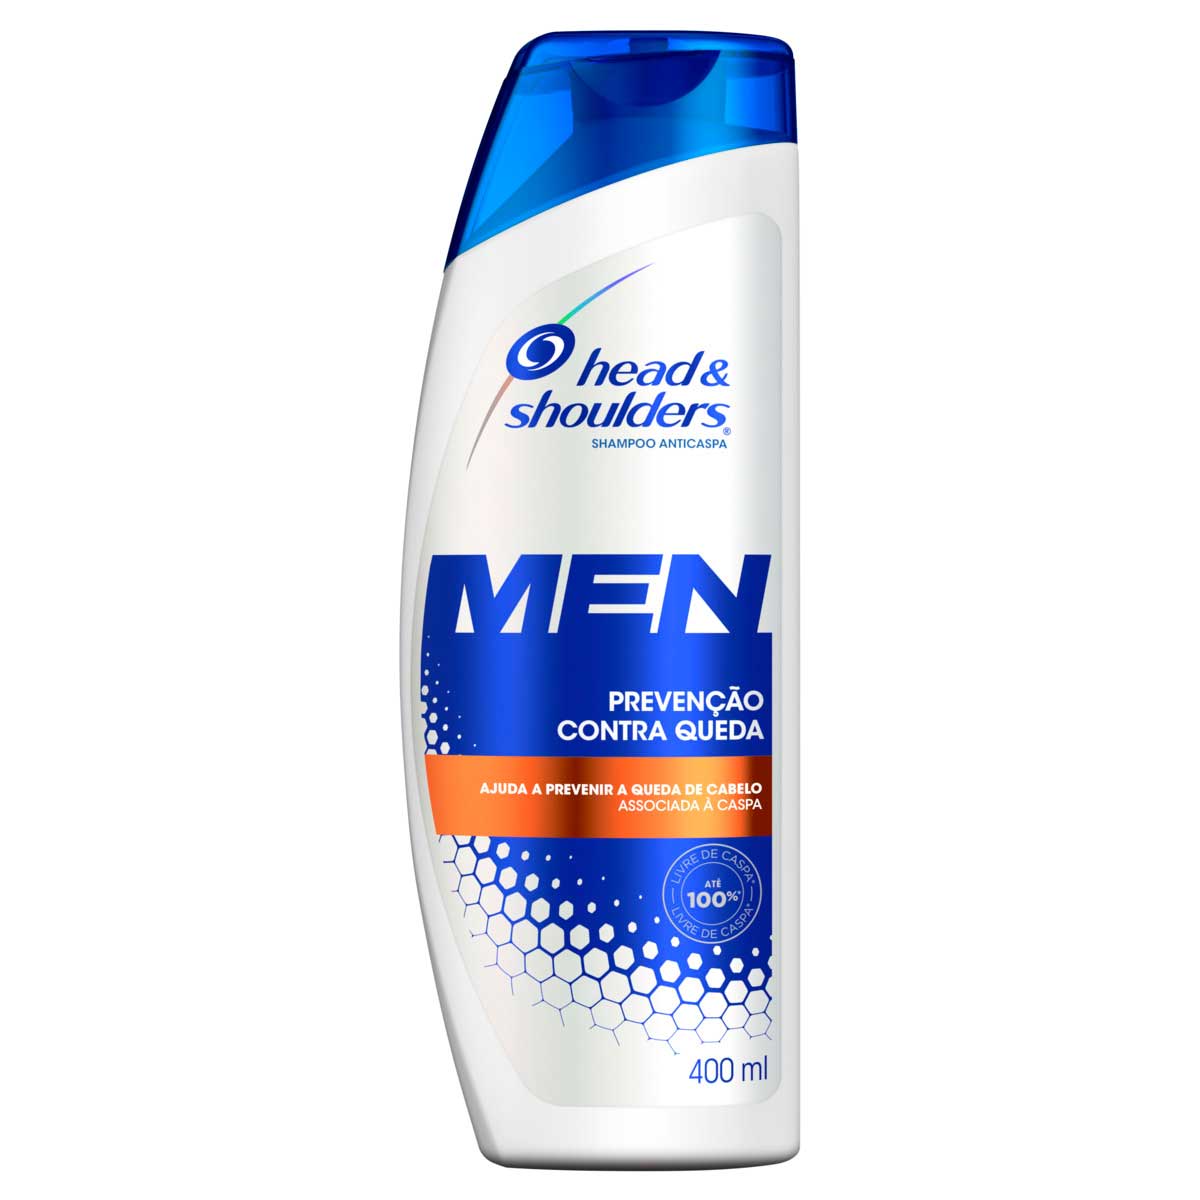 shampoo-anticaspa-head-&-shoulders-men-prevencao-contra-queda-frasco-400-ml-1.jpg